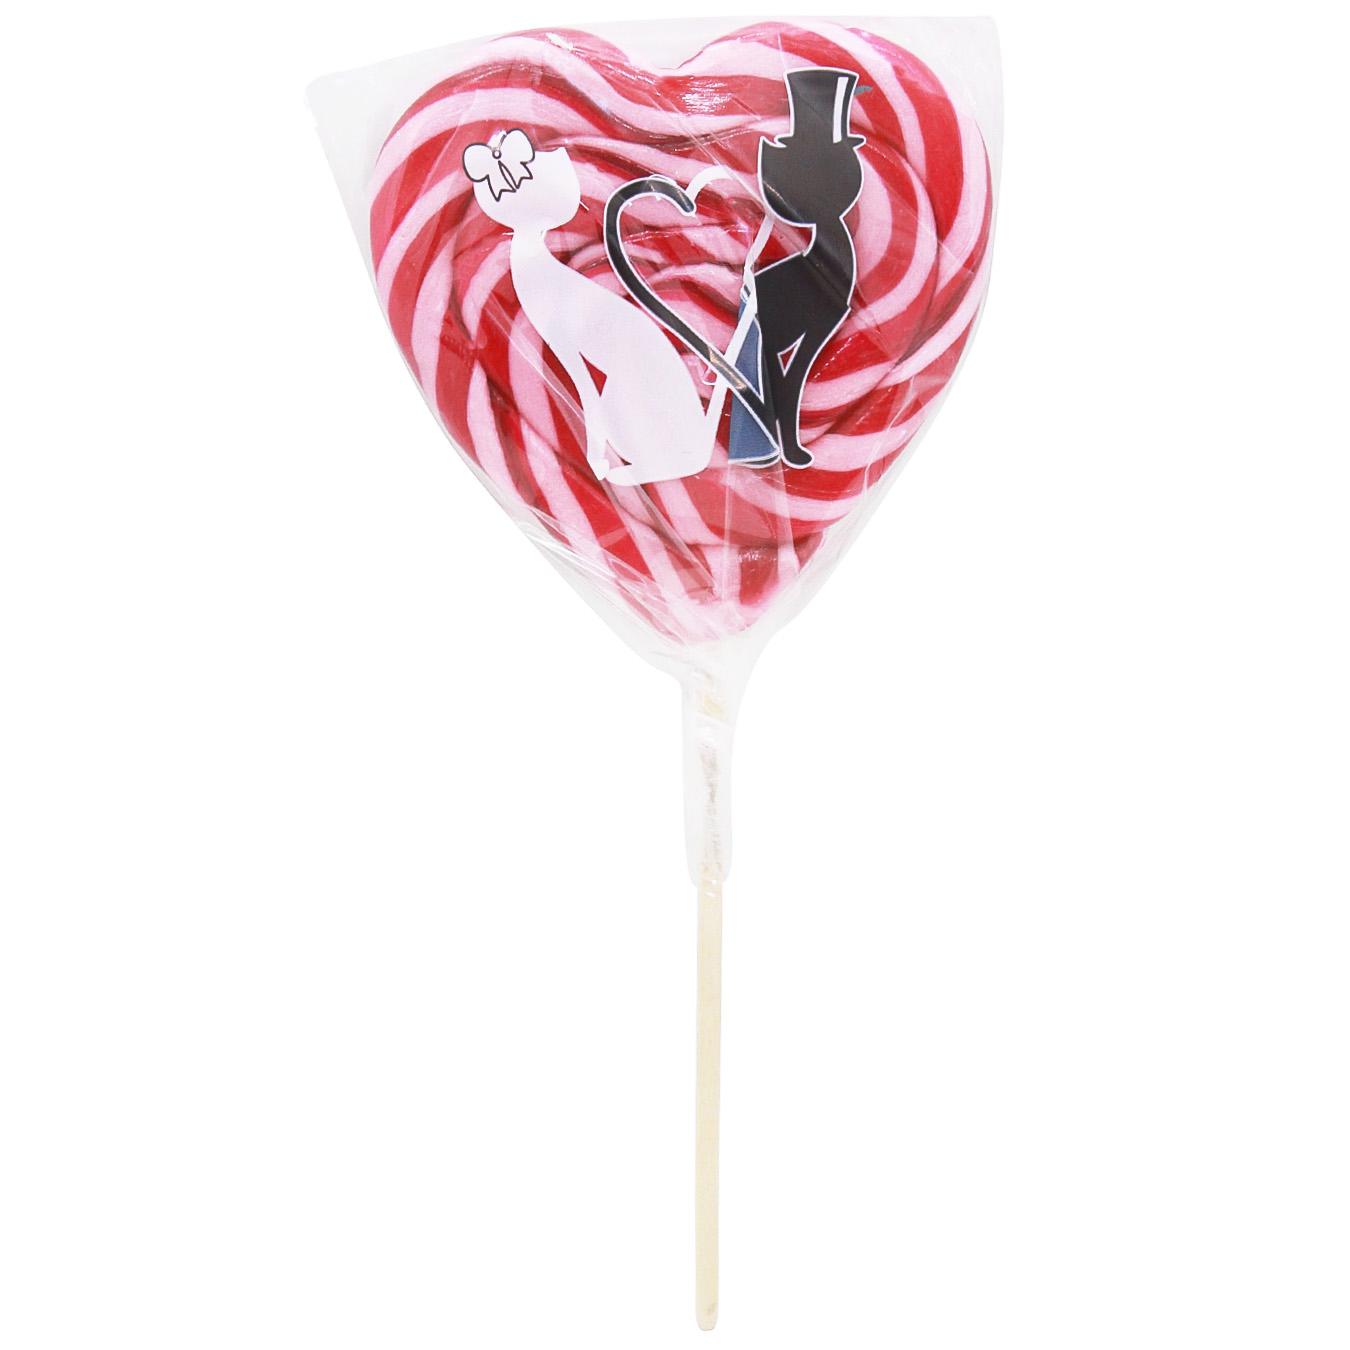 Lollipop Heart of Rox 100g